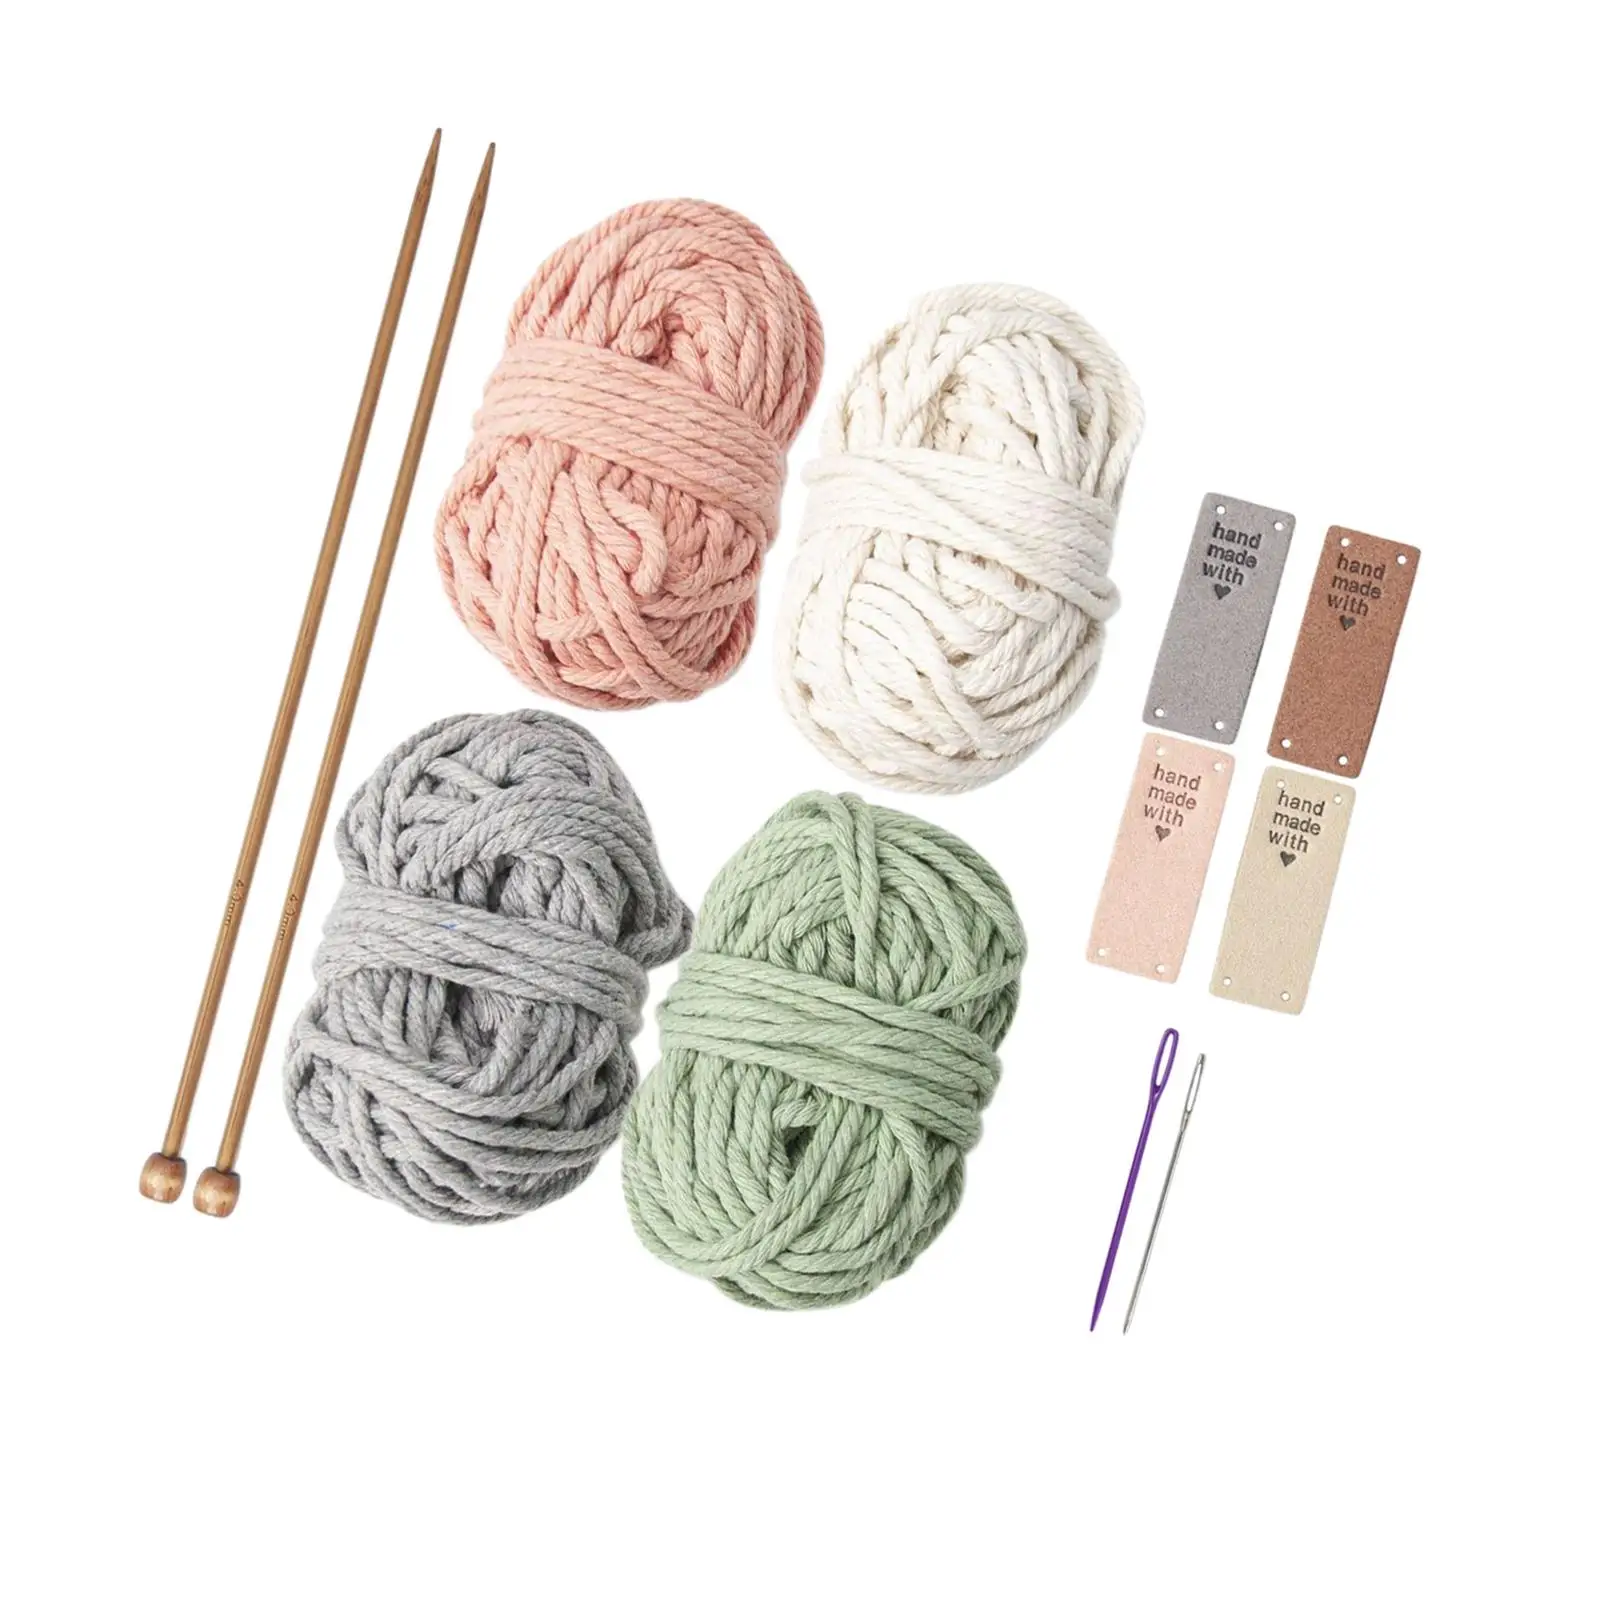 Crochet Kit for Beginners 4 Color Handwoven for Starter Children Needlework